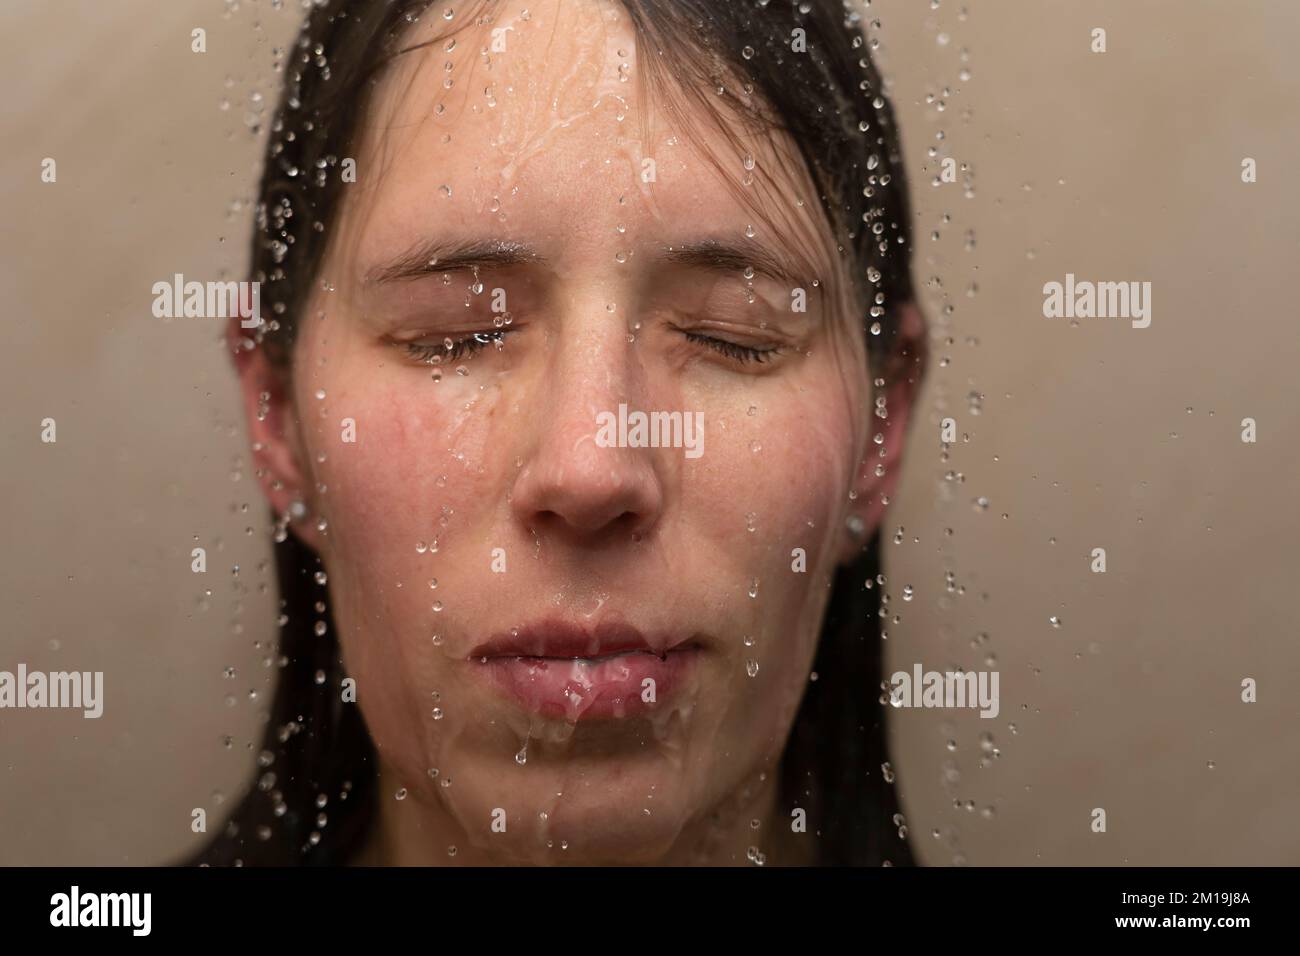 Eine junge Frau unter der Dusche, mit Wasser, das ihr ins Gesicht läuft. Konzept: Psychische Gesundheit, Ängste, Ängste, Gefühl gebrochen, körperdysmorphe Störung Stockfoto